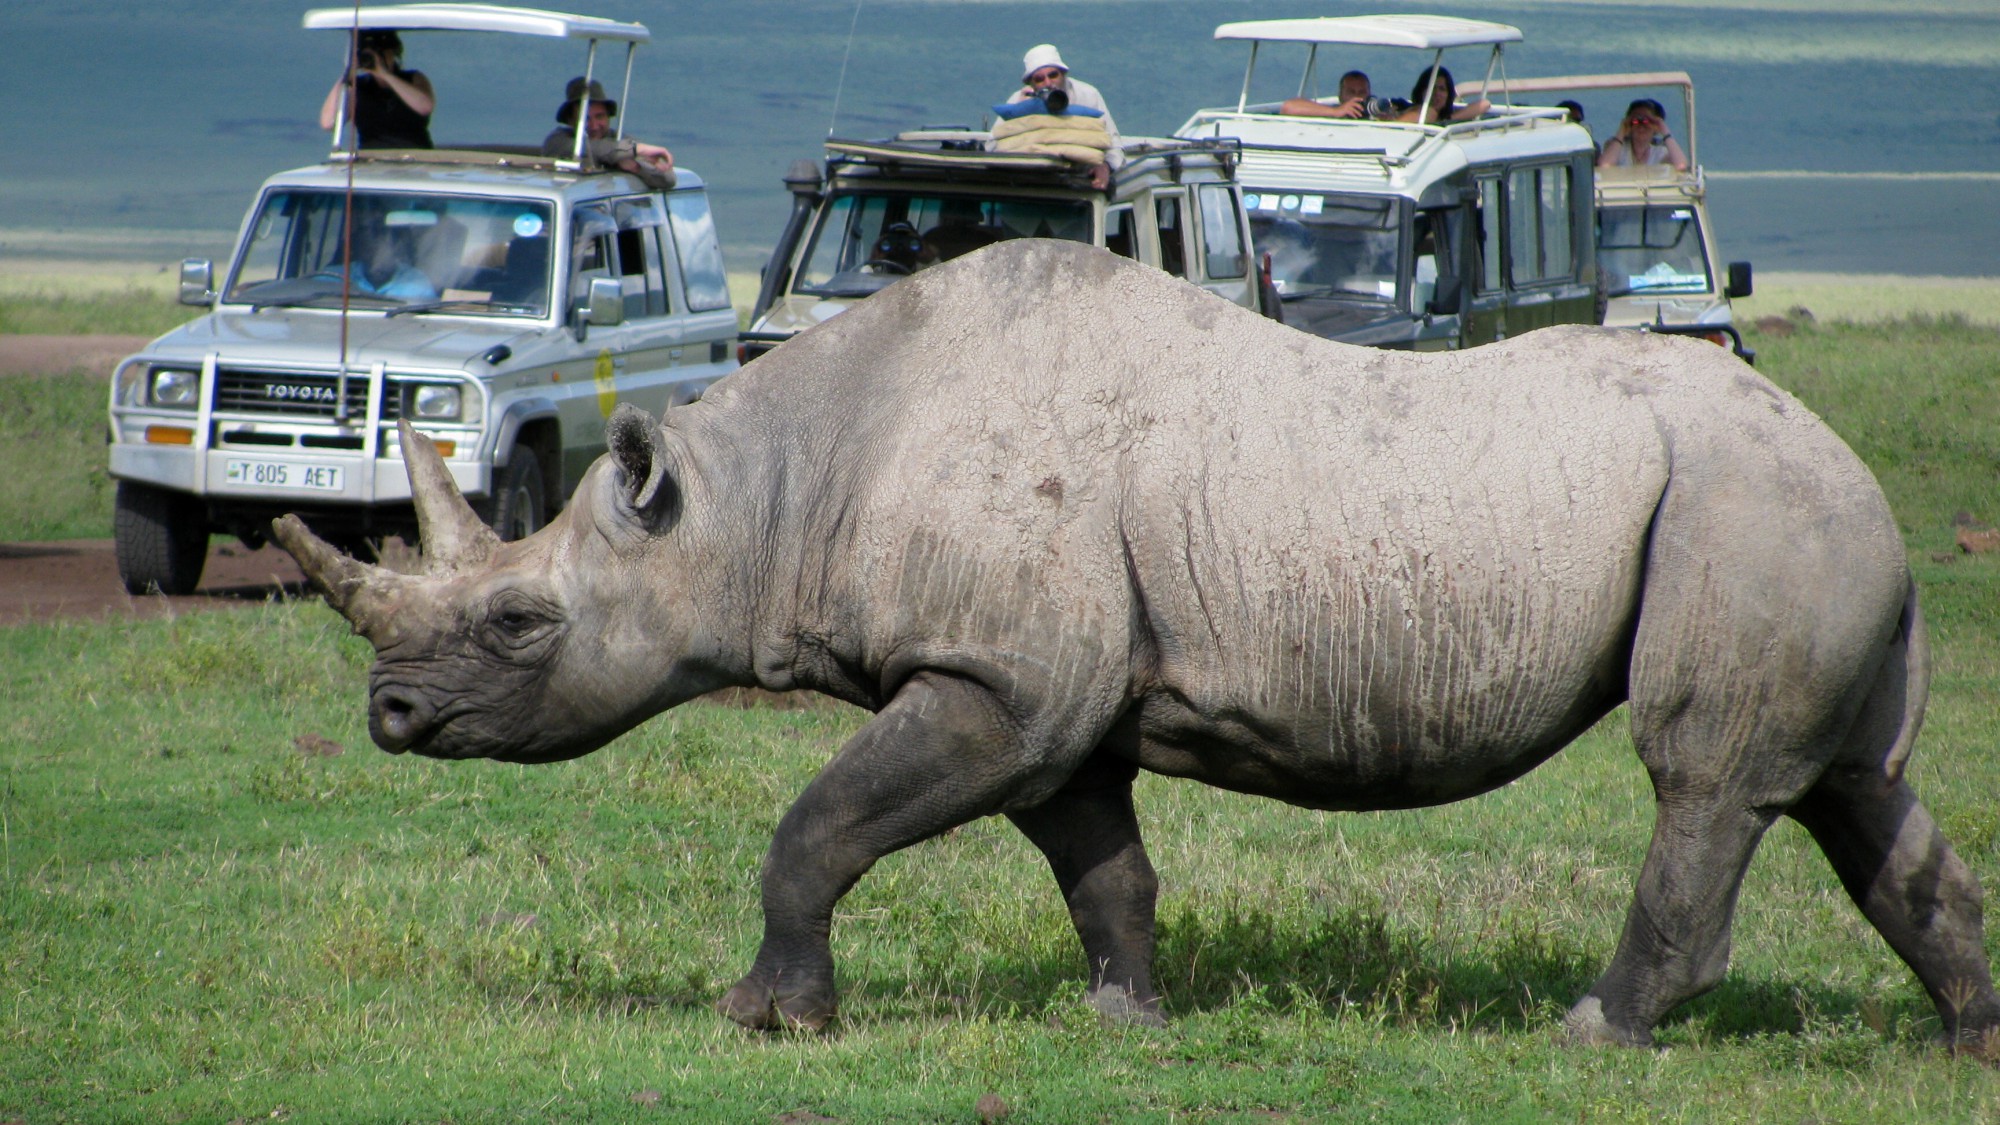 Nosorožce budete na Safari potkávat přímo u cesty